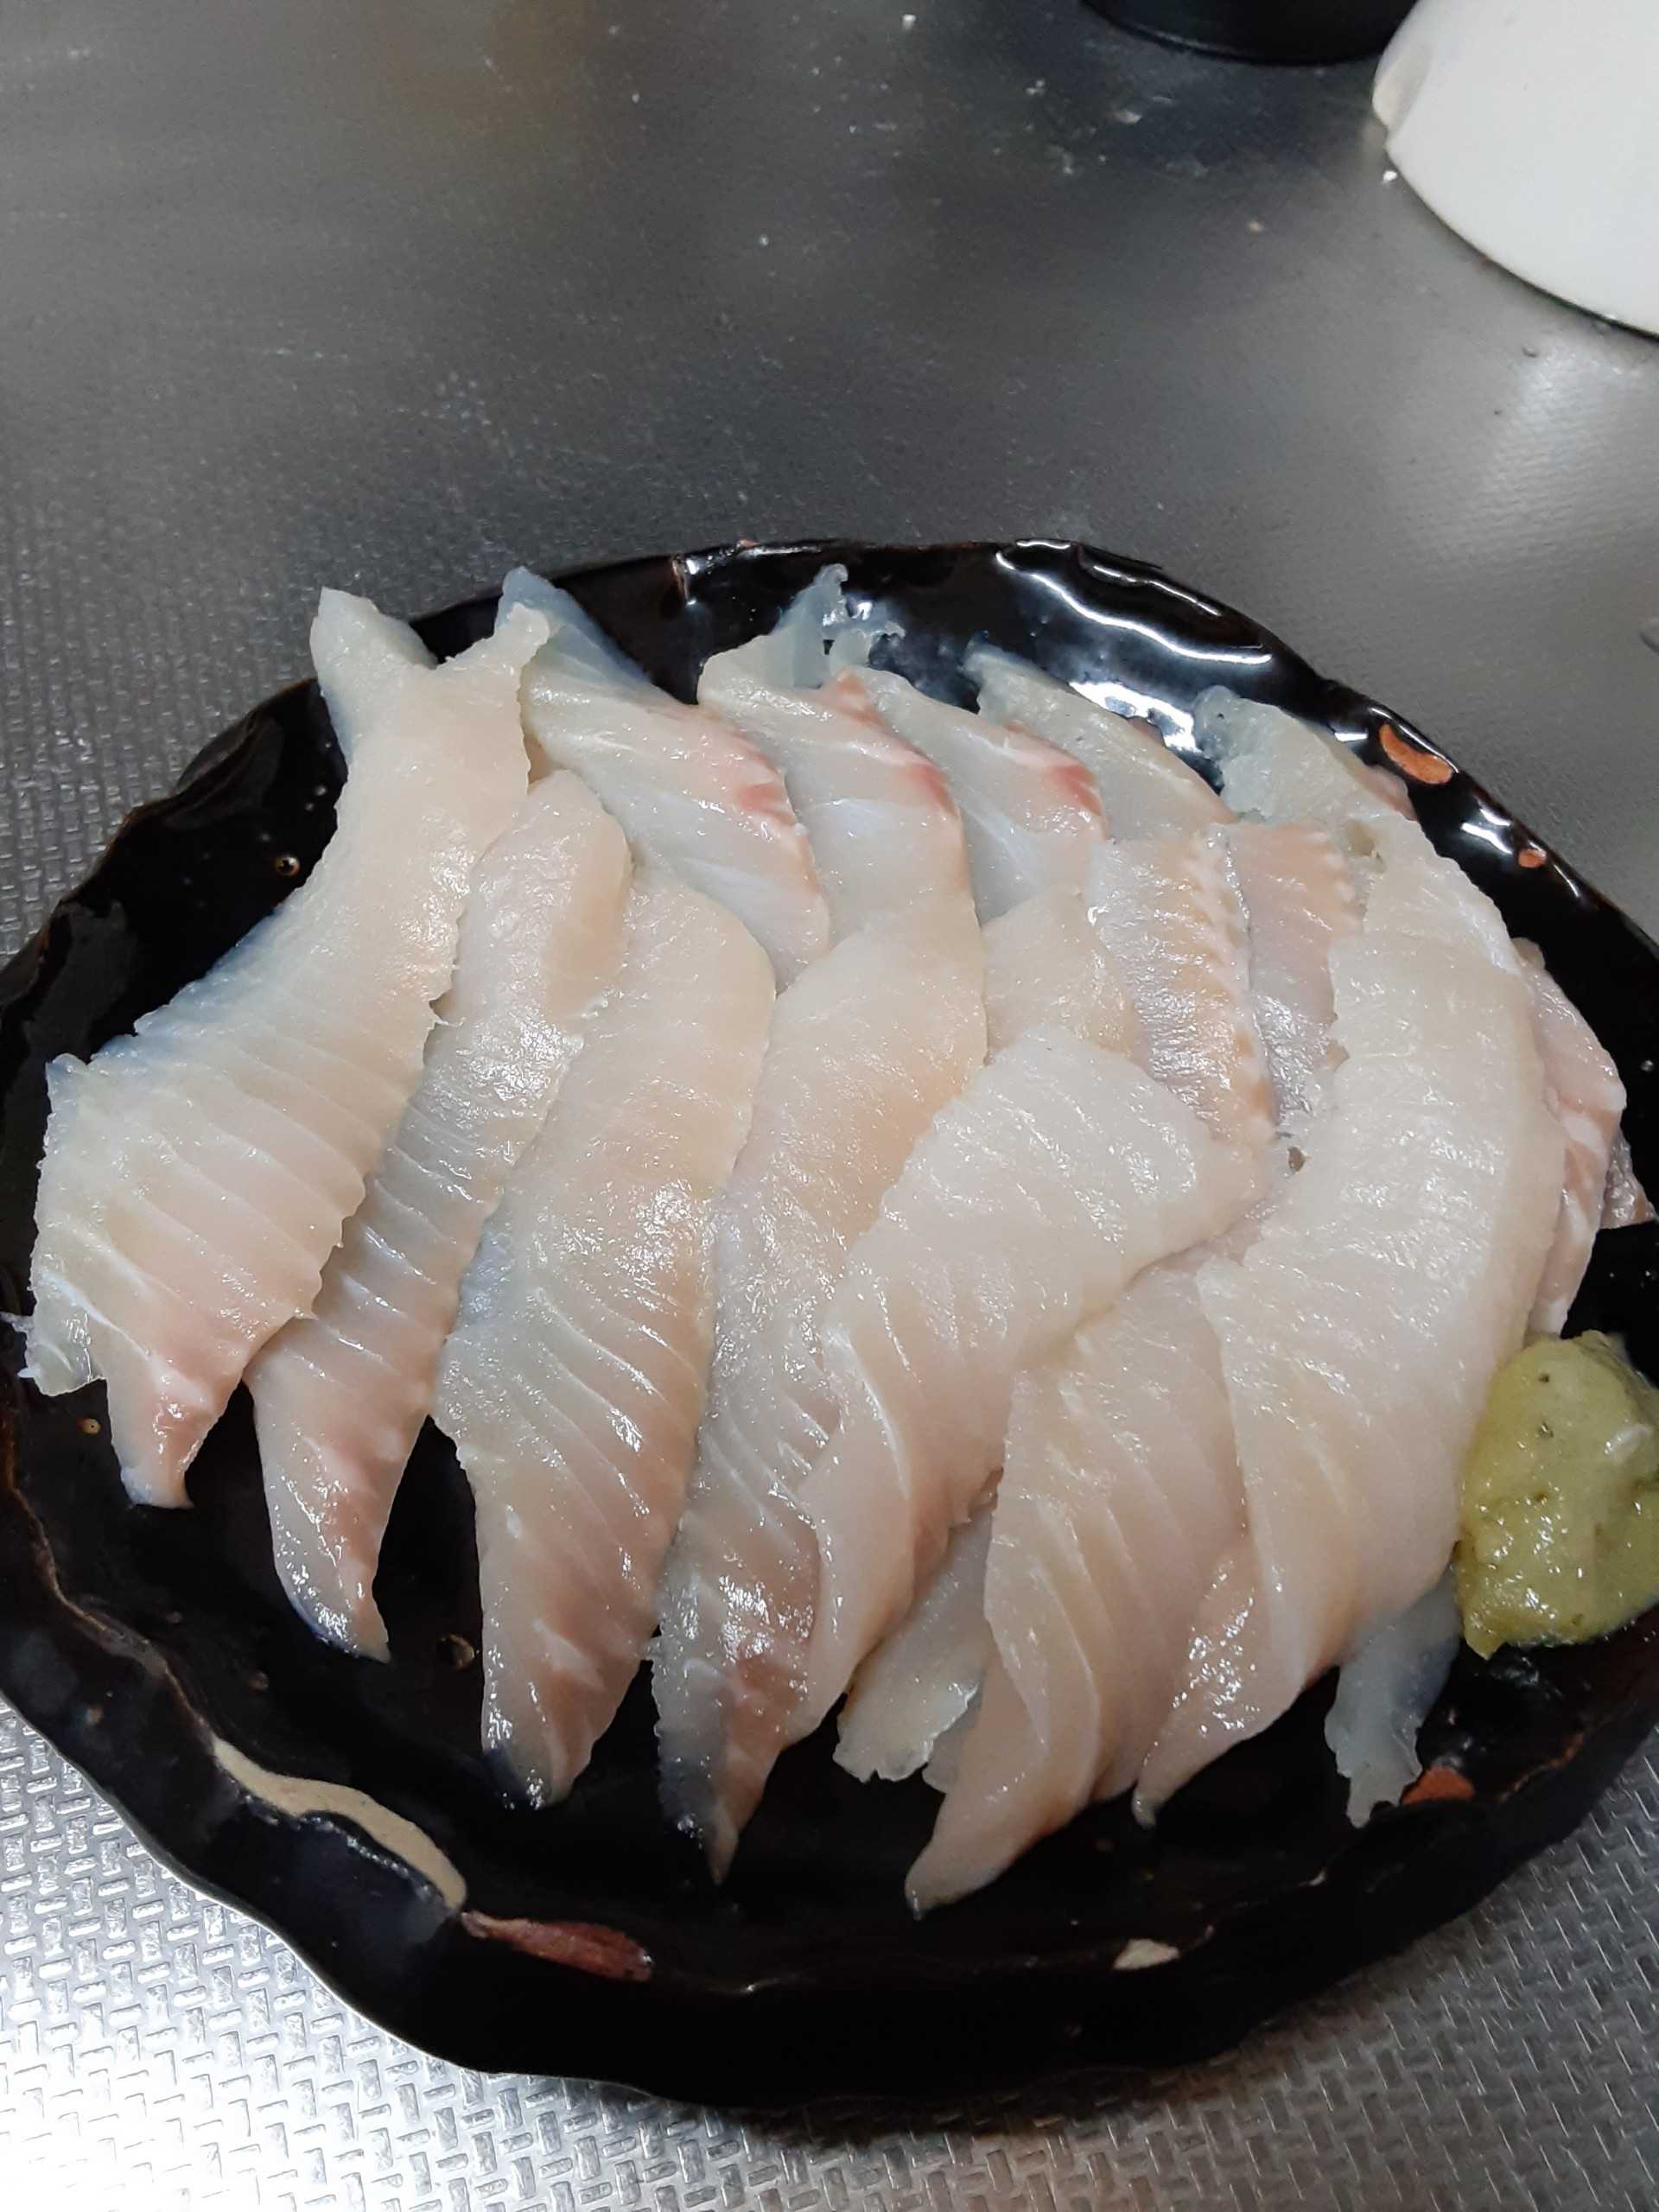 釣った魚を美味しく食べましょう イワナとヤマメを調理してみた タカの管釣り釣行記 楽天ブログ